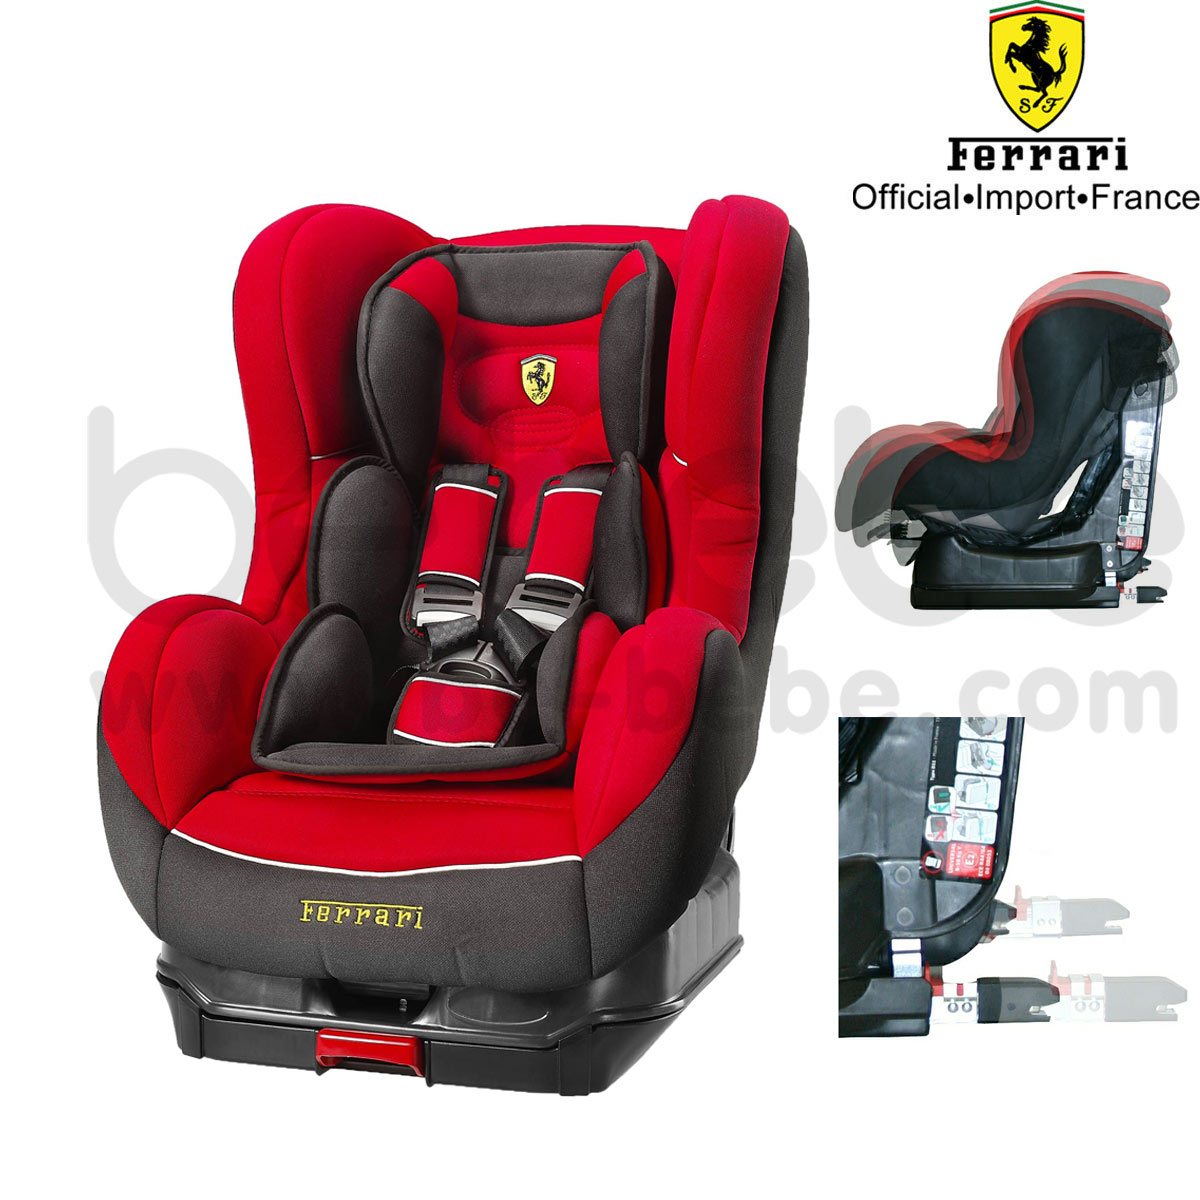 คาร์ซีท Ferrari : Carseat CosmoSP ISOFI (Red) ***สินค้าหมดชั่วคราว***